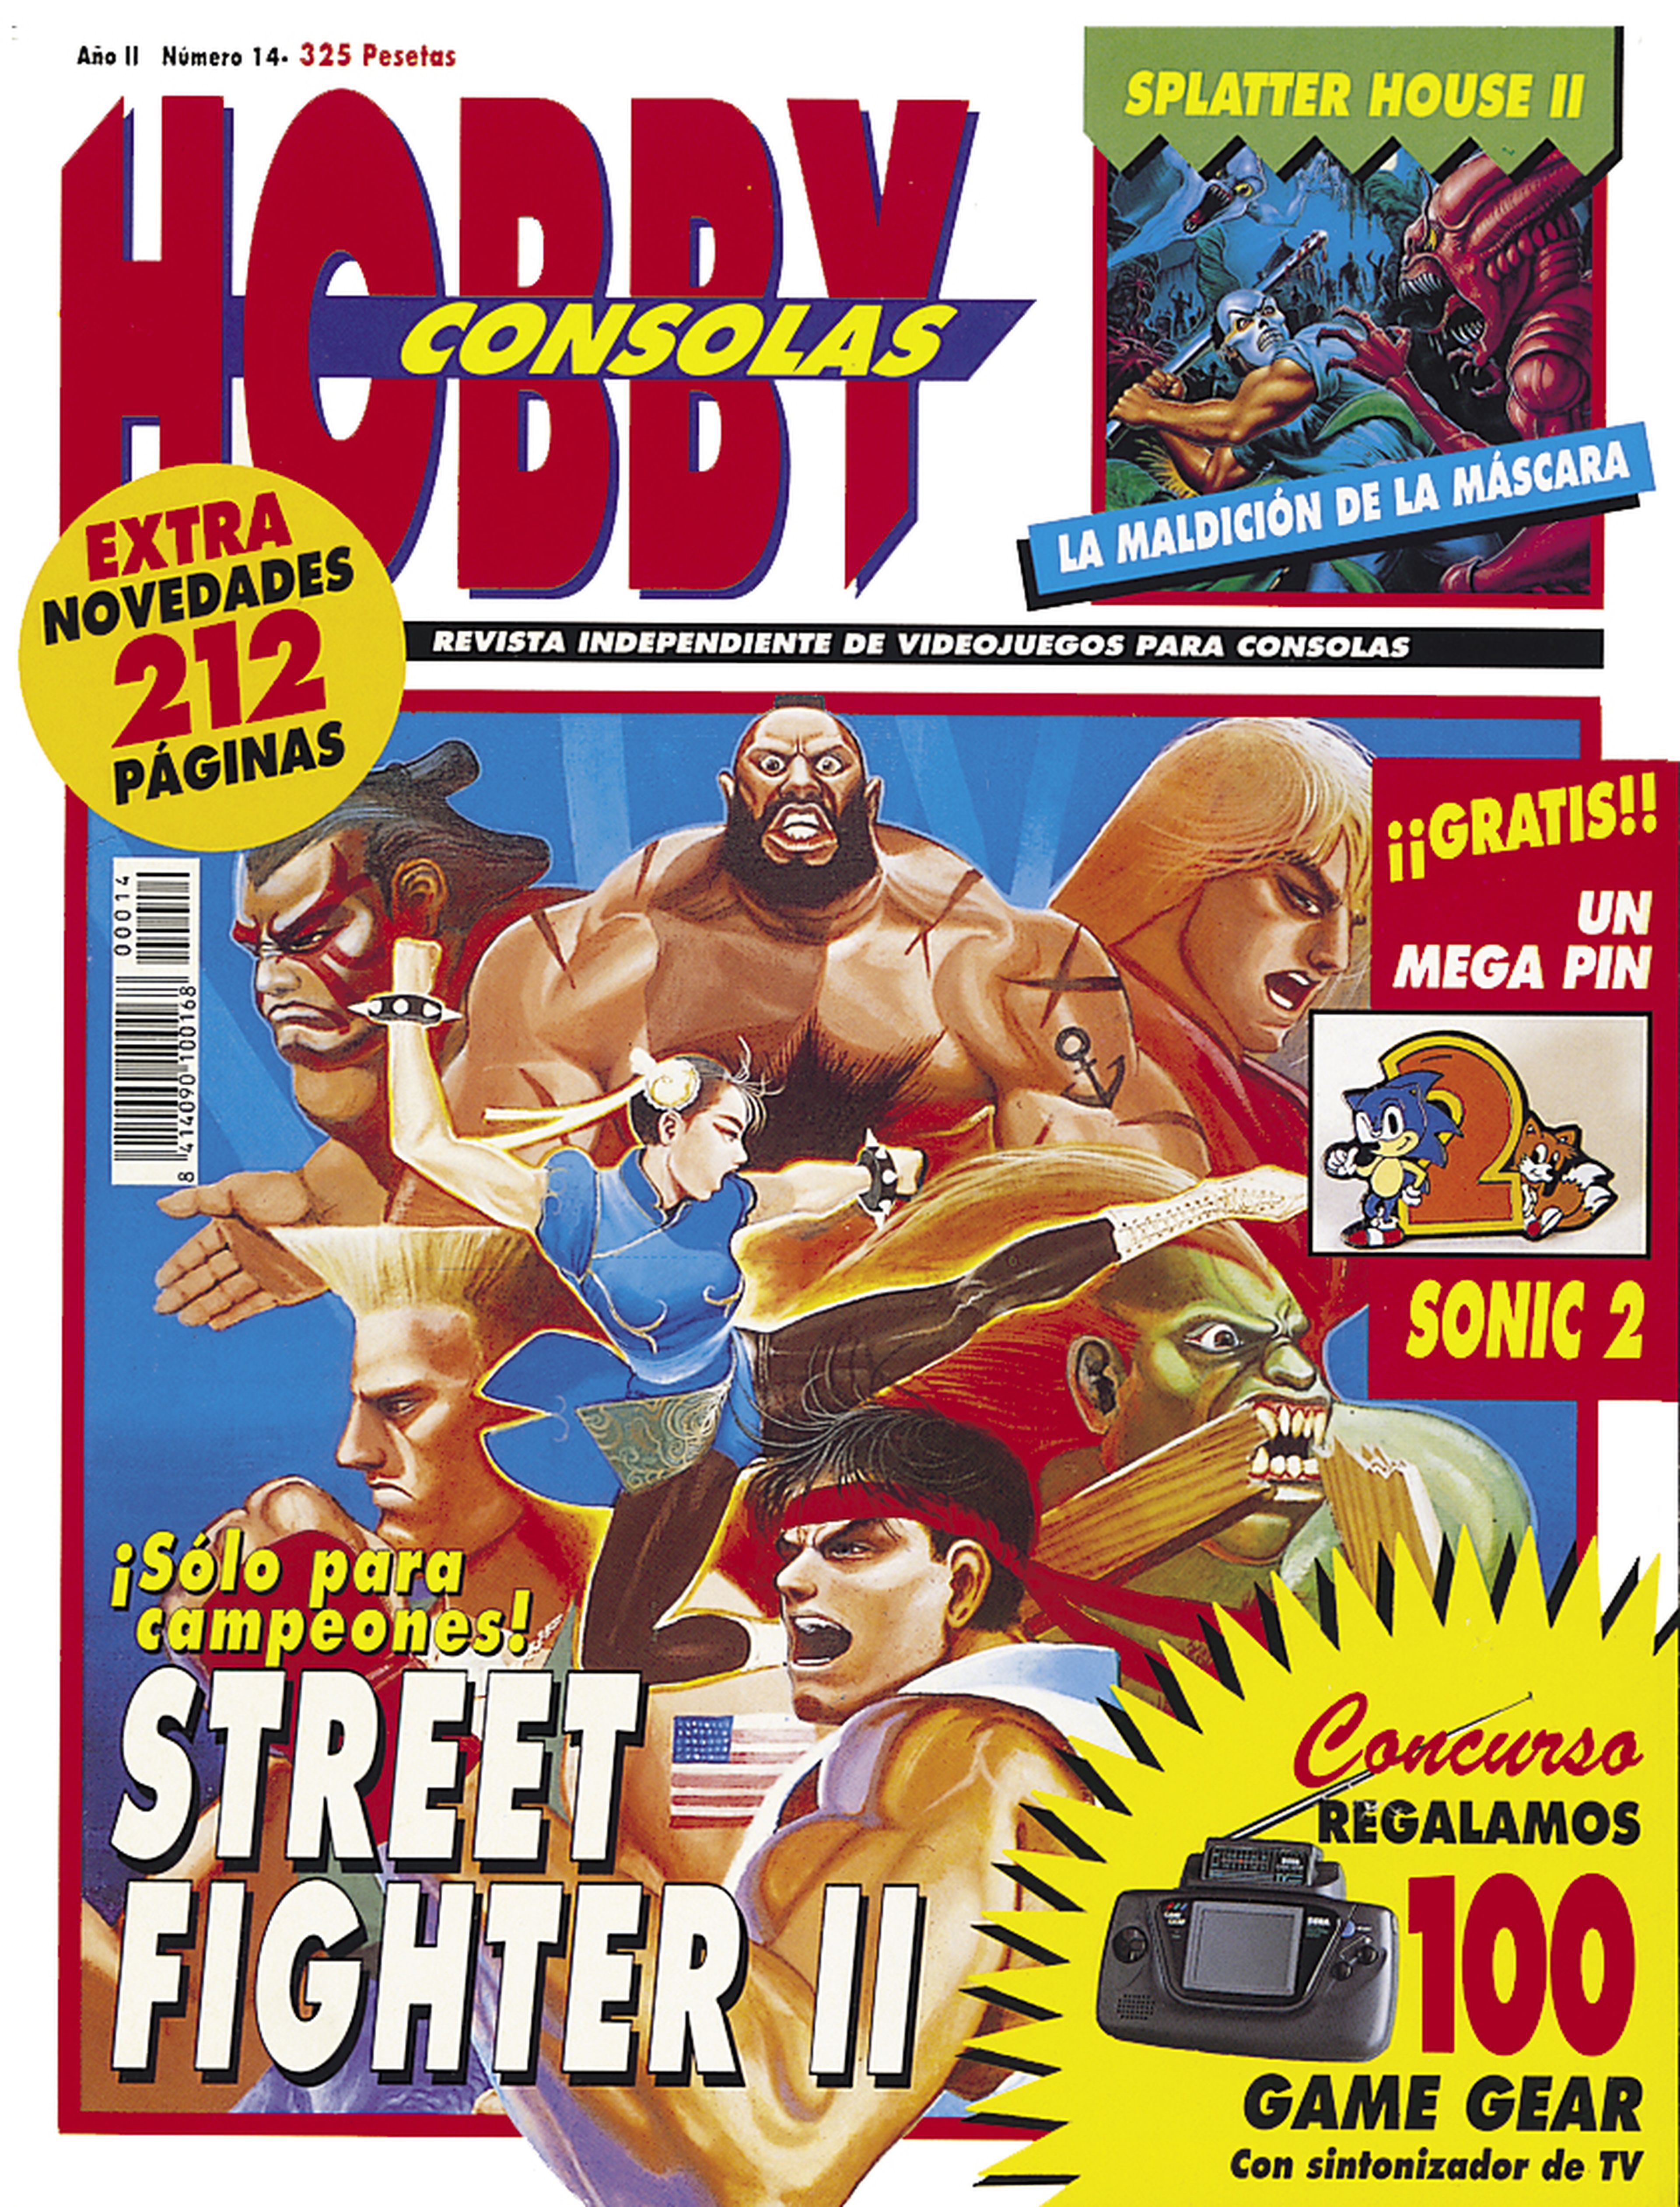 Street Fighter II fue portada en el número 14 de Hobby Consols, con el completo análisis de The Elf